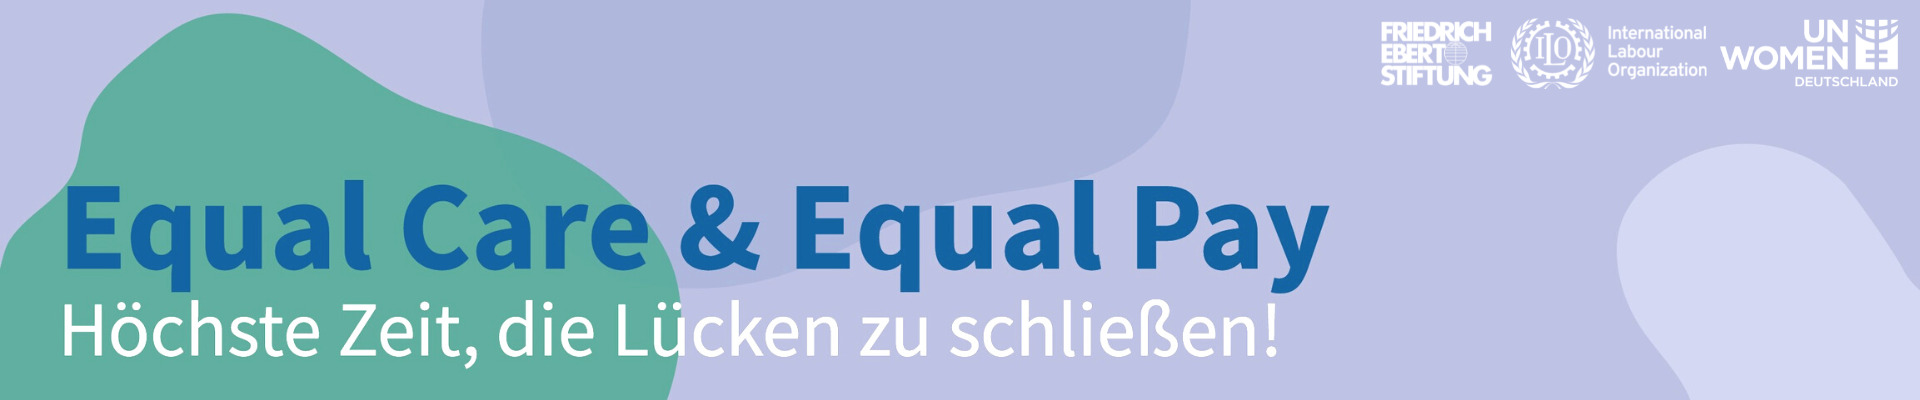 Equal Care & Equal Pay - höchste Zeit, die Lücken zu schließen